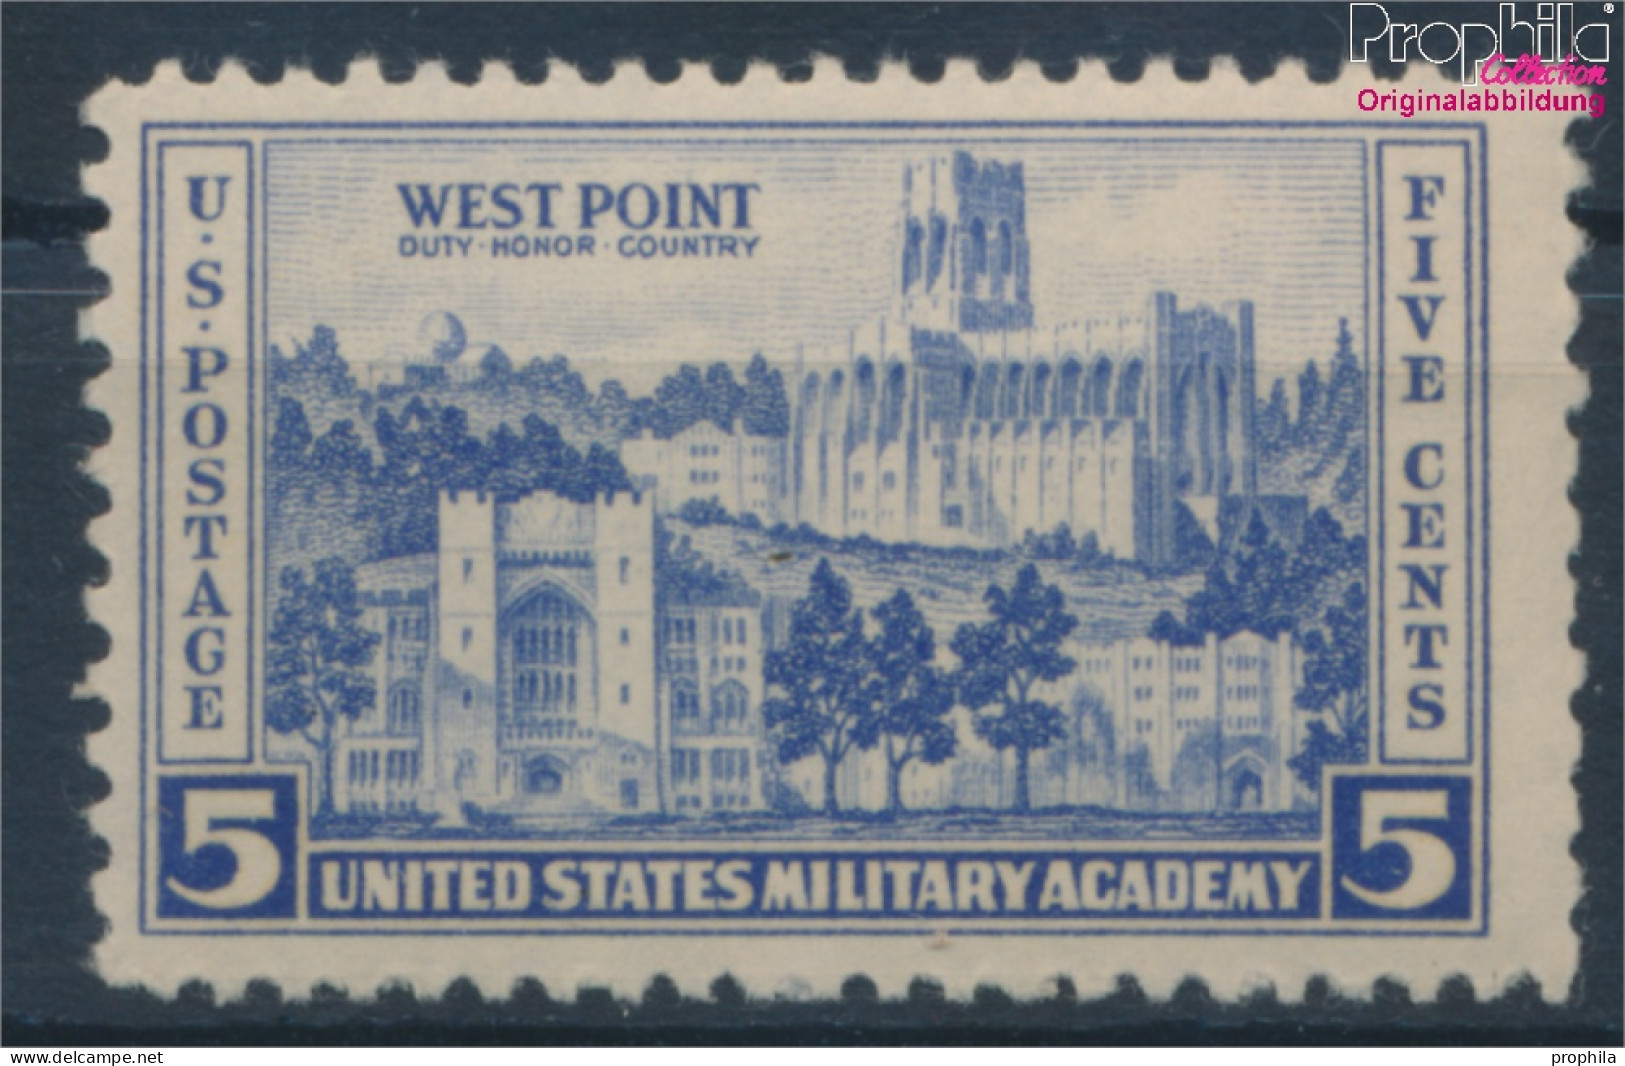 USA 394 Postfrisch 1936 Land- Und Seestreitkräfte (10336697 - Nuevos